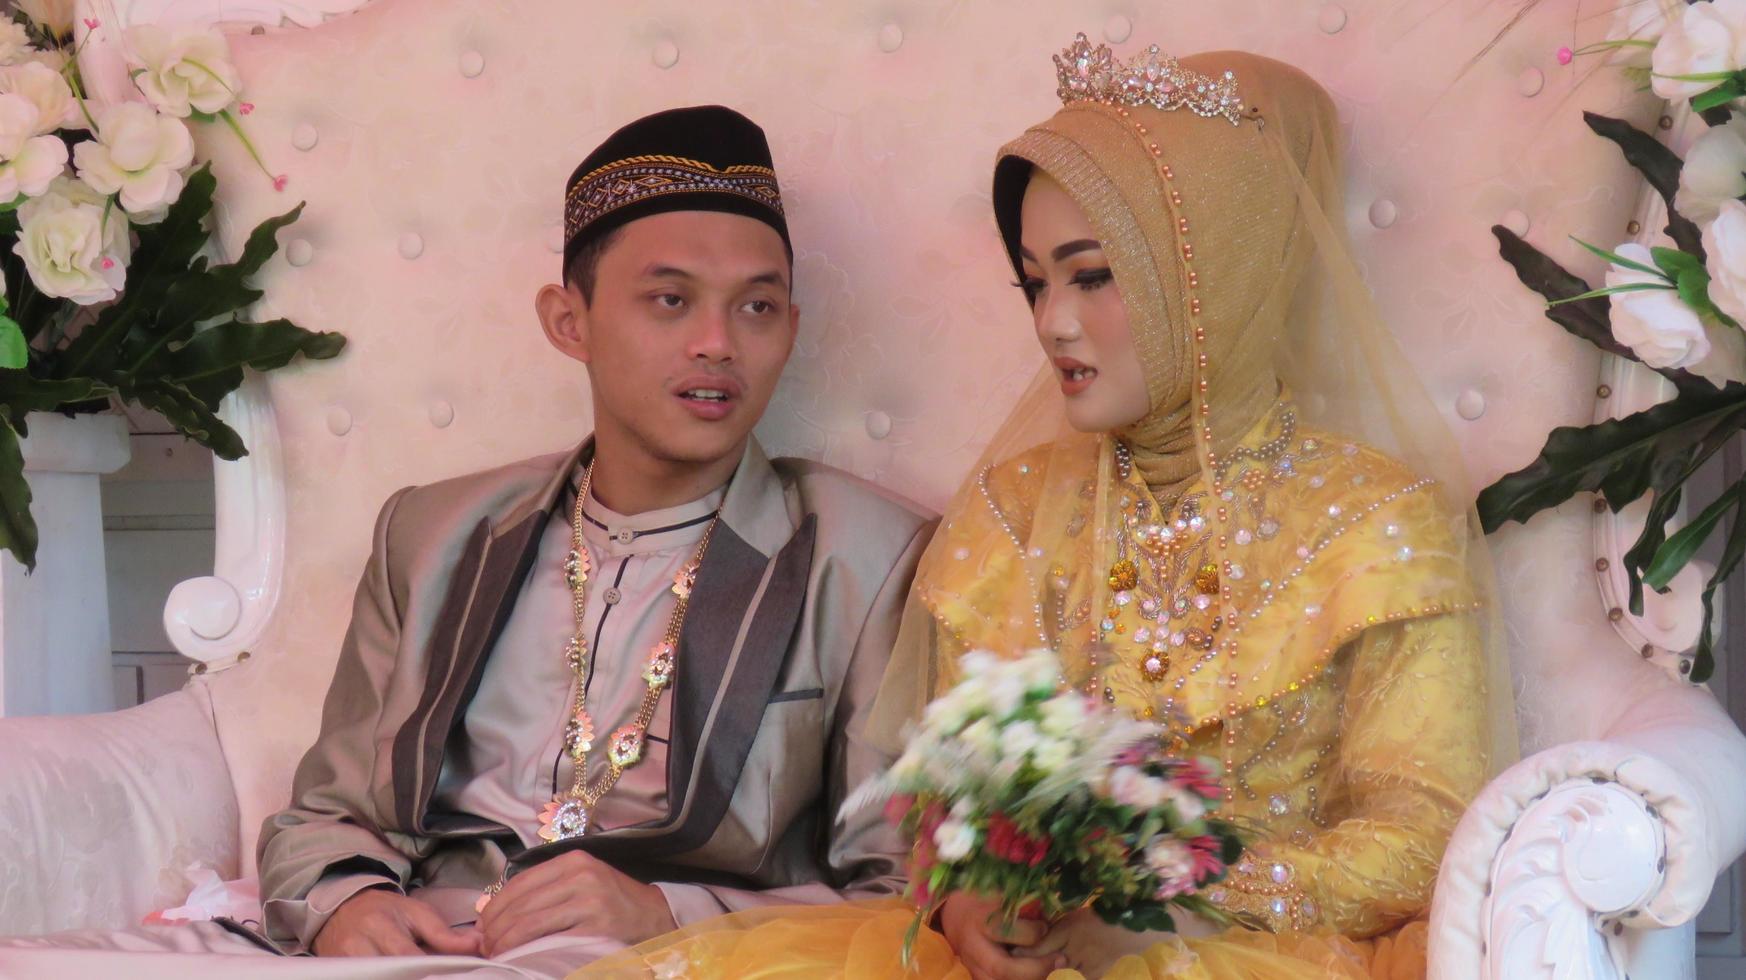 cianjur regency west java indonesien am 15. juni 2021 - ein glückliches paar. indonesische muslimische hochzeit. foto